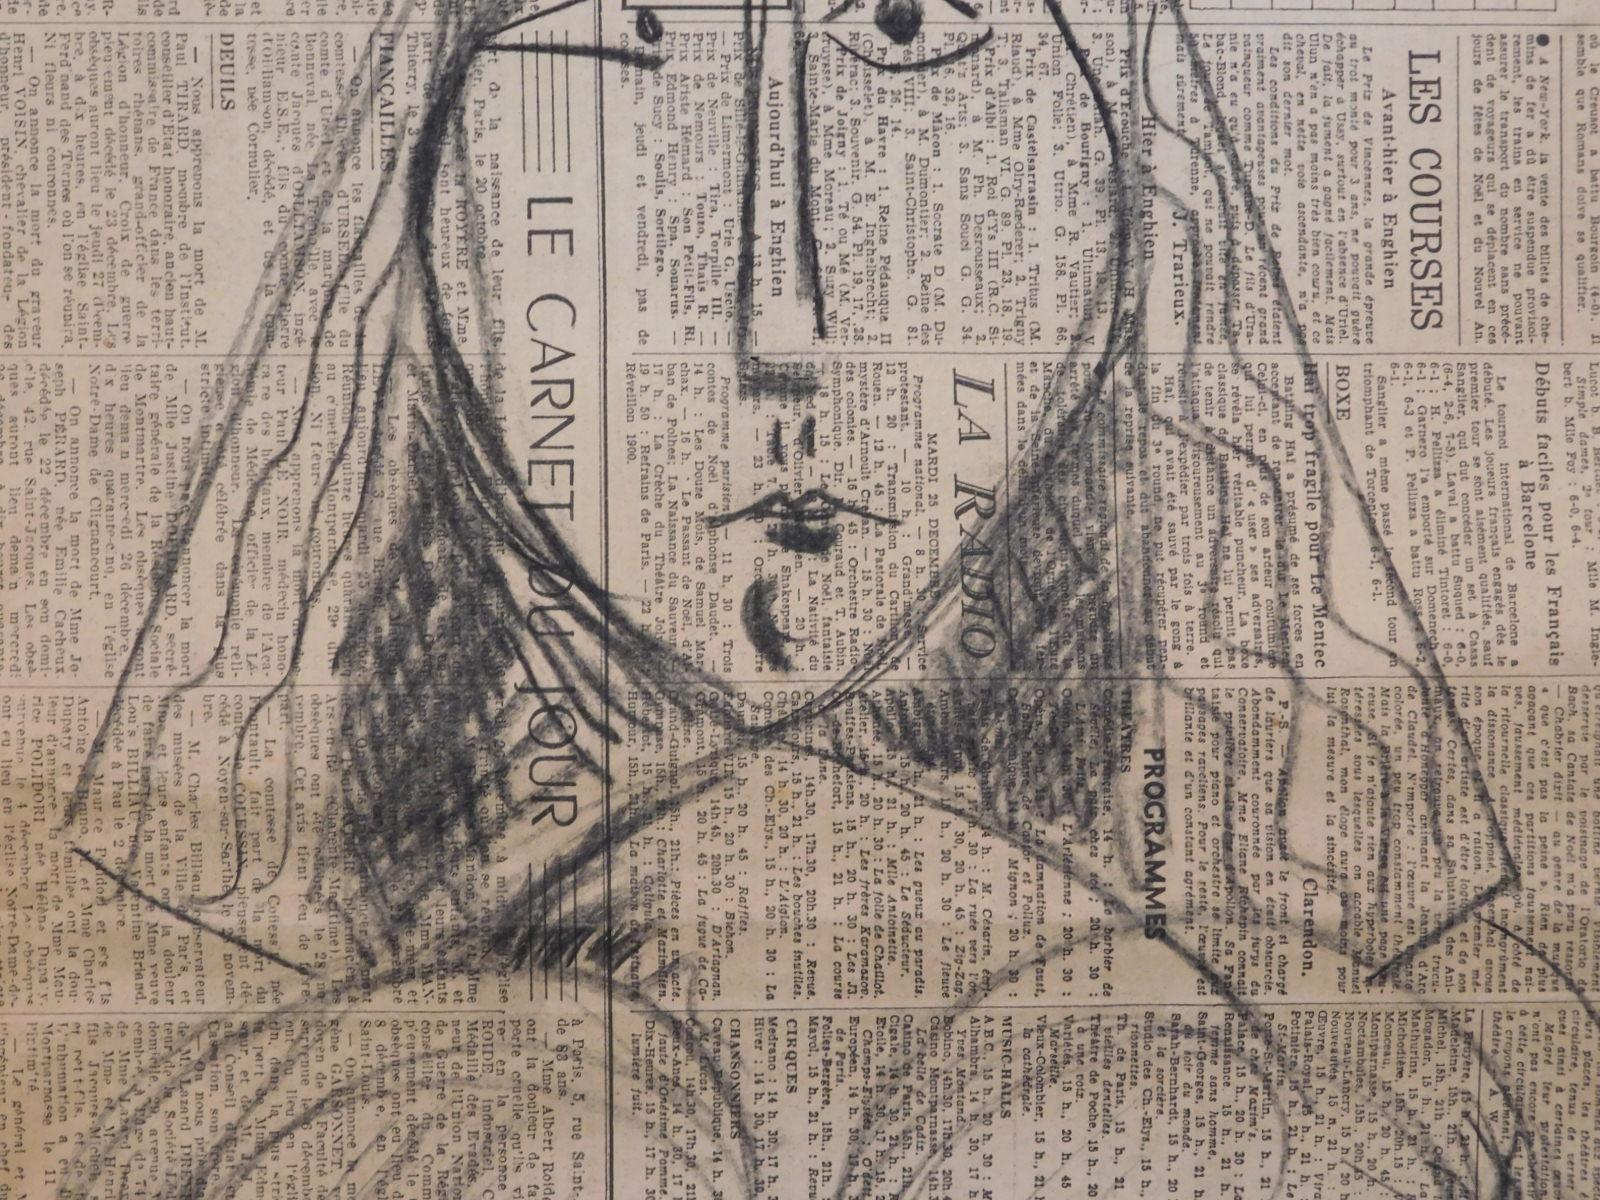 Pablo Picasso: Portrait of a Woman